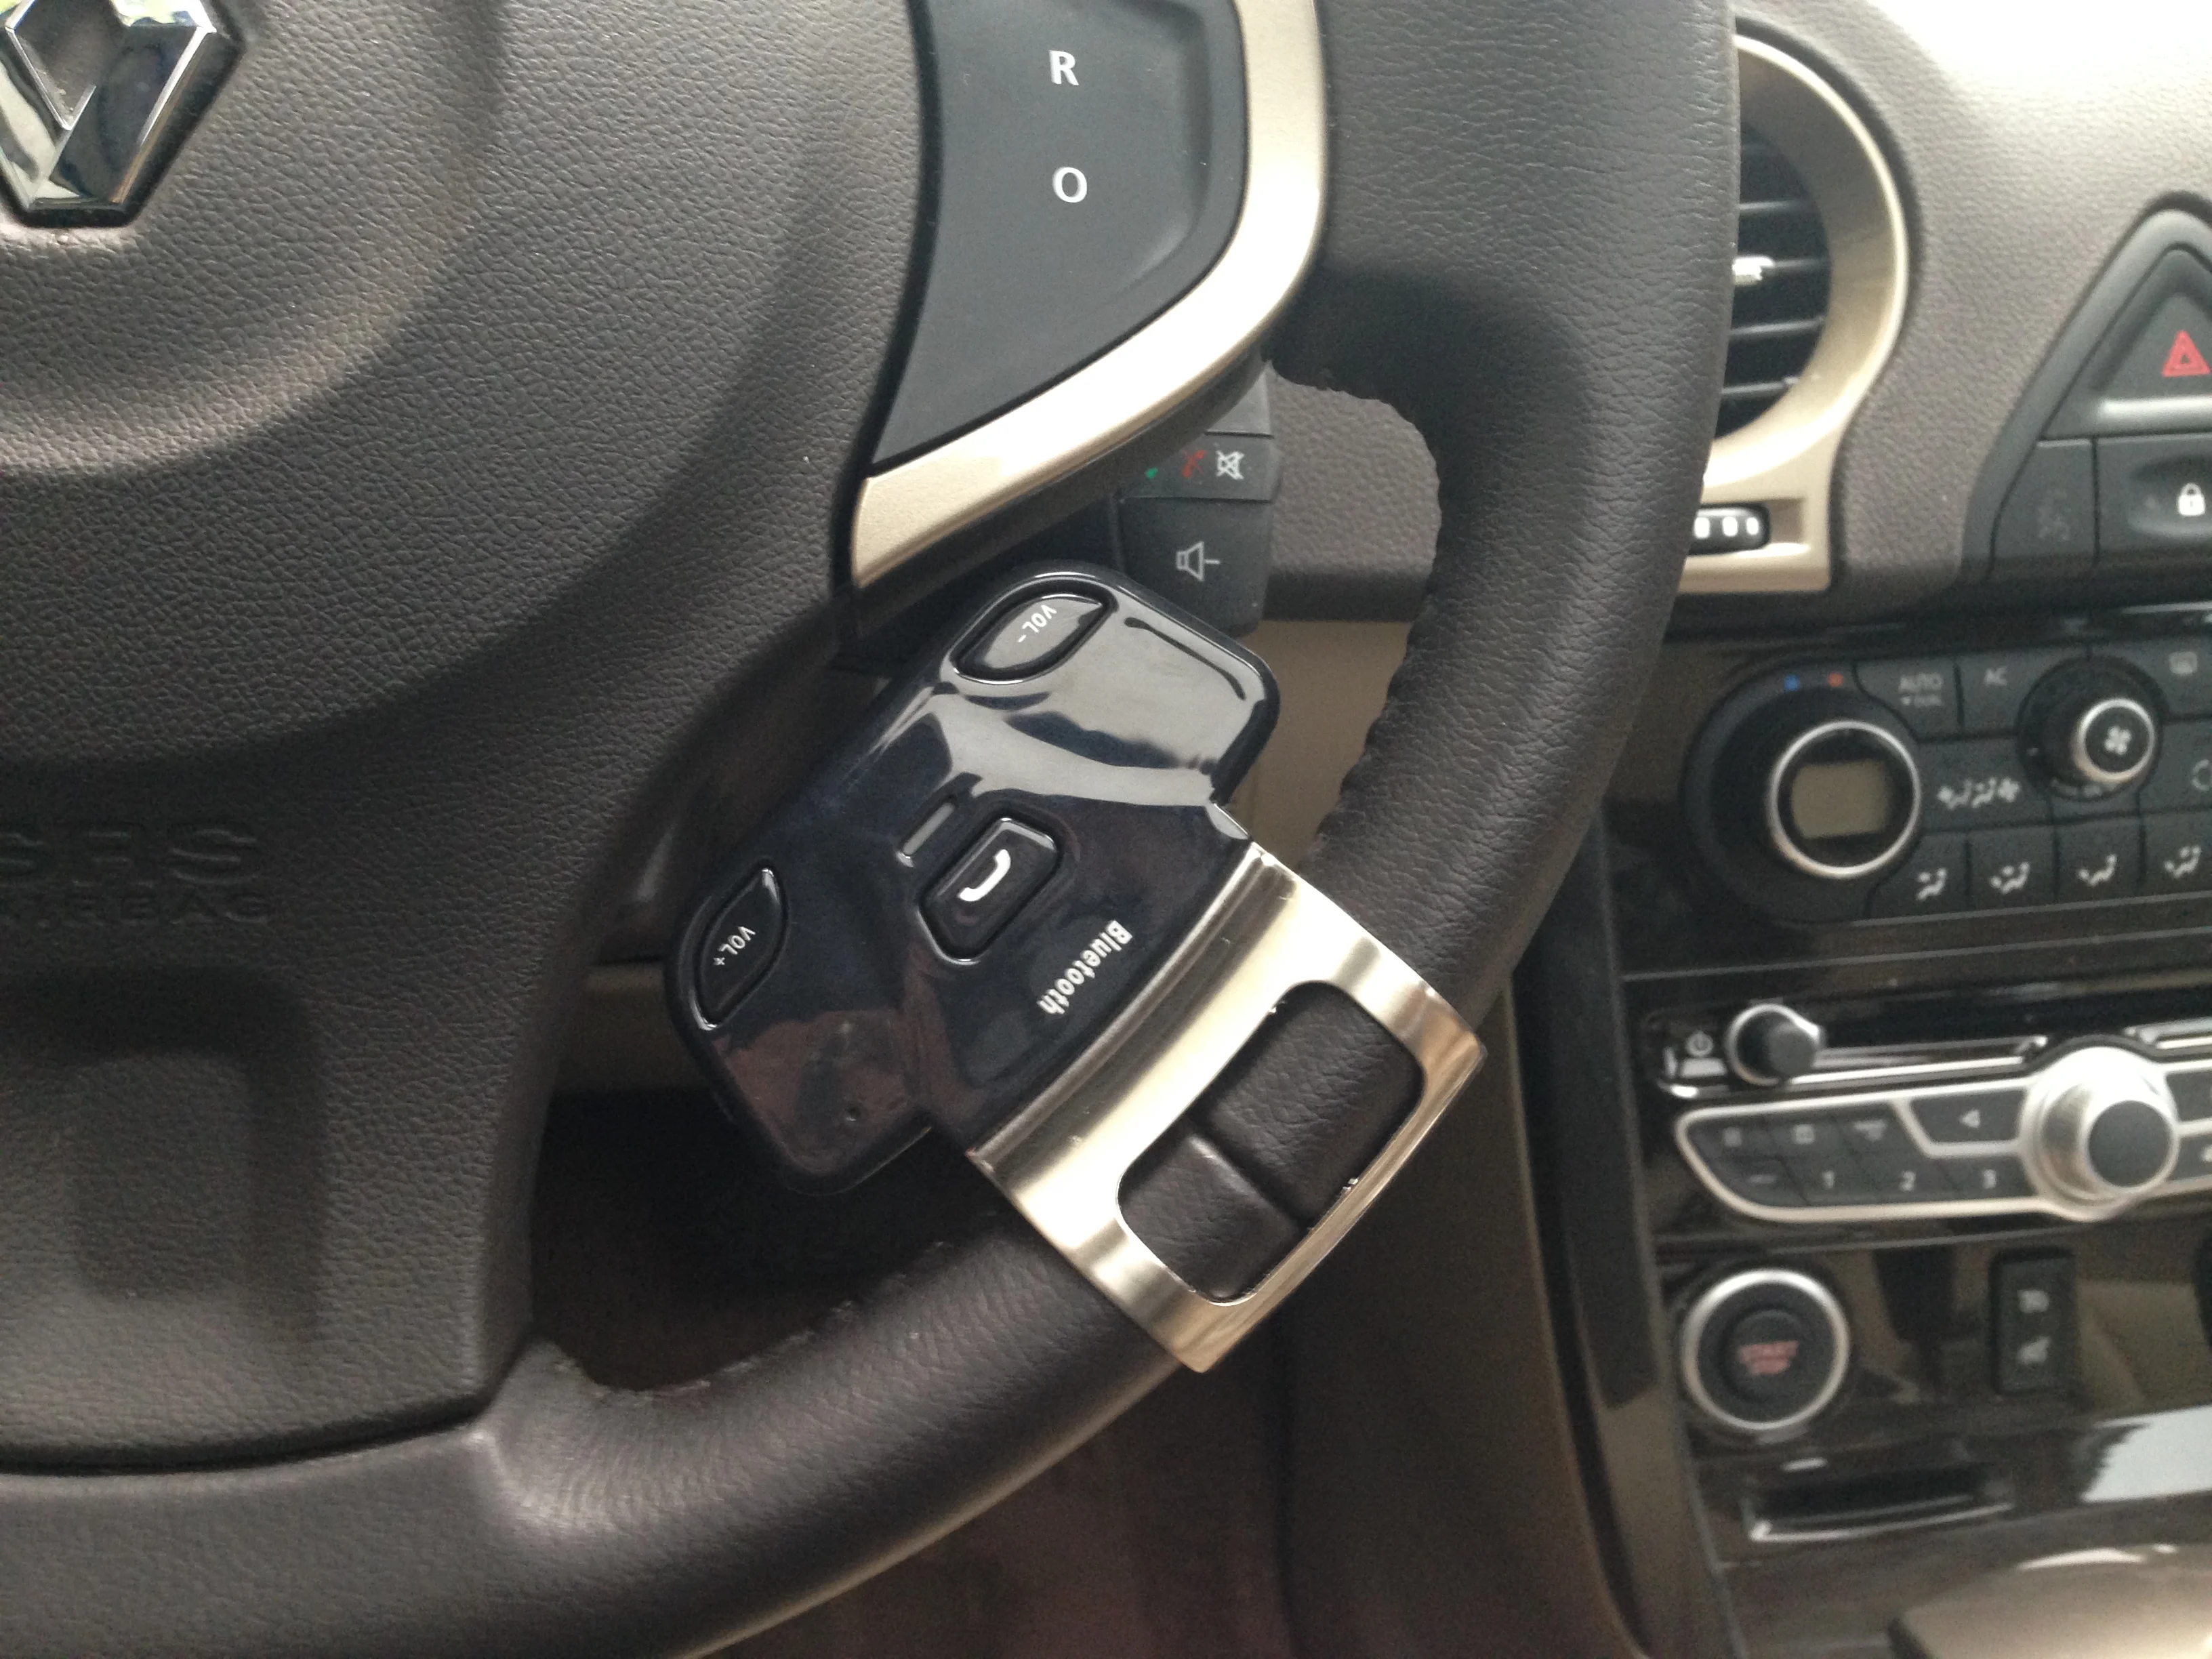 HandsFree рулевое колесо Bluetooth автомобильные комплекты handsfree kit фиксация на рулевом колесе Поддержка автомобиля Bluetooth связь